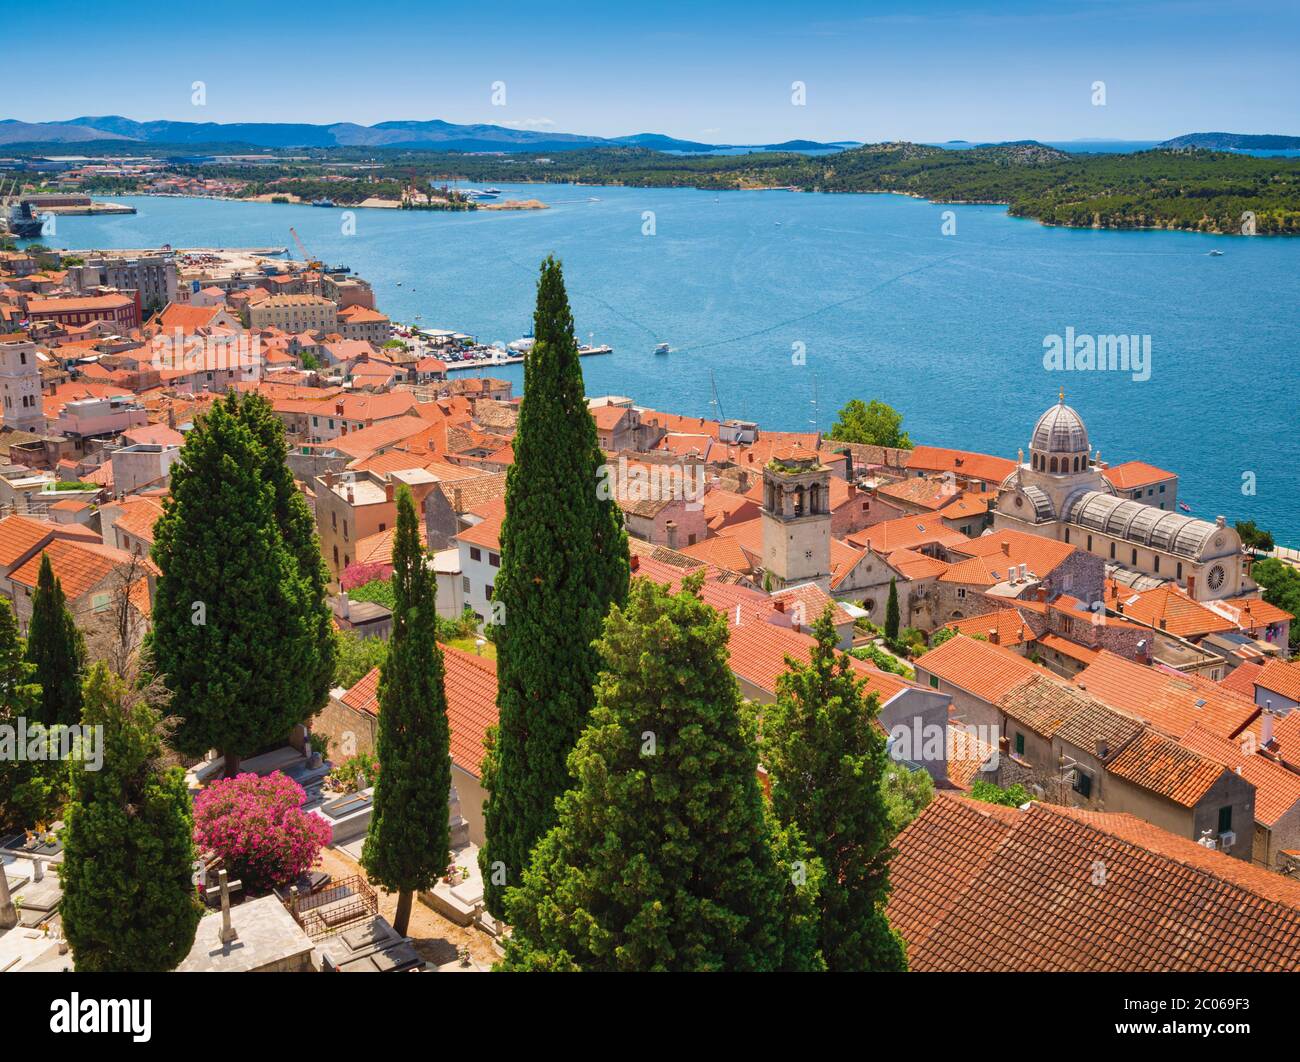 Sibenik, Contea di Sibenik-Knin, Dalmazia, Croazia. Vista generale della città. Cattedrale di San Giacomo (croato: Katedrala sv. Jakova) sulla destra. Foto Stock